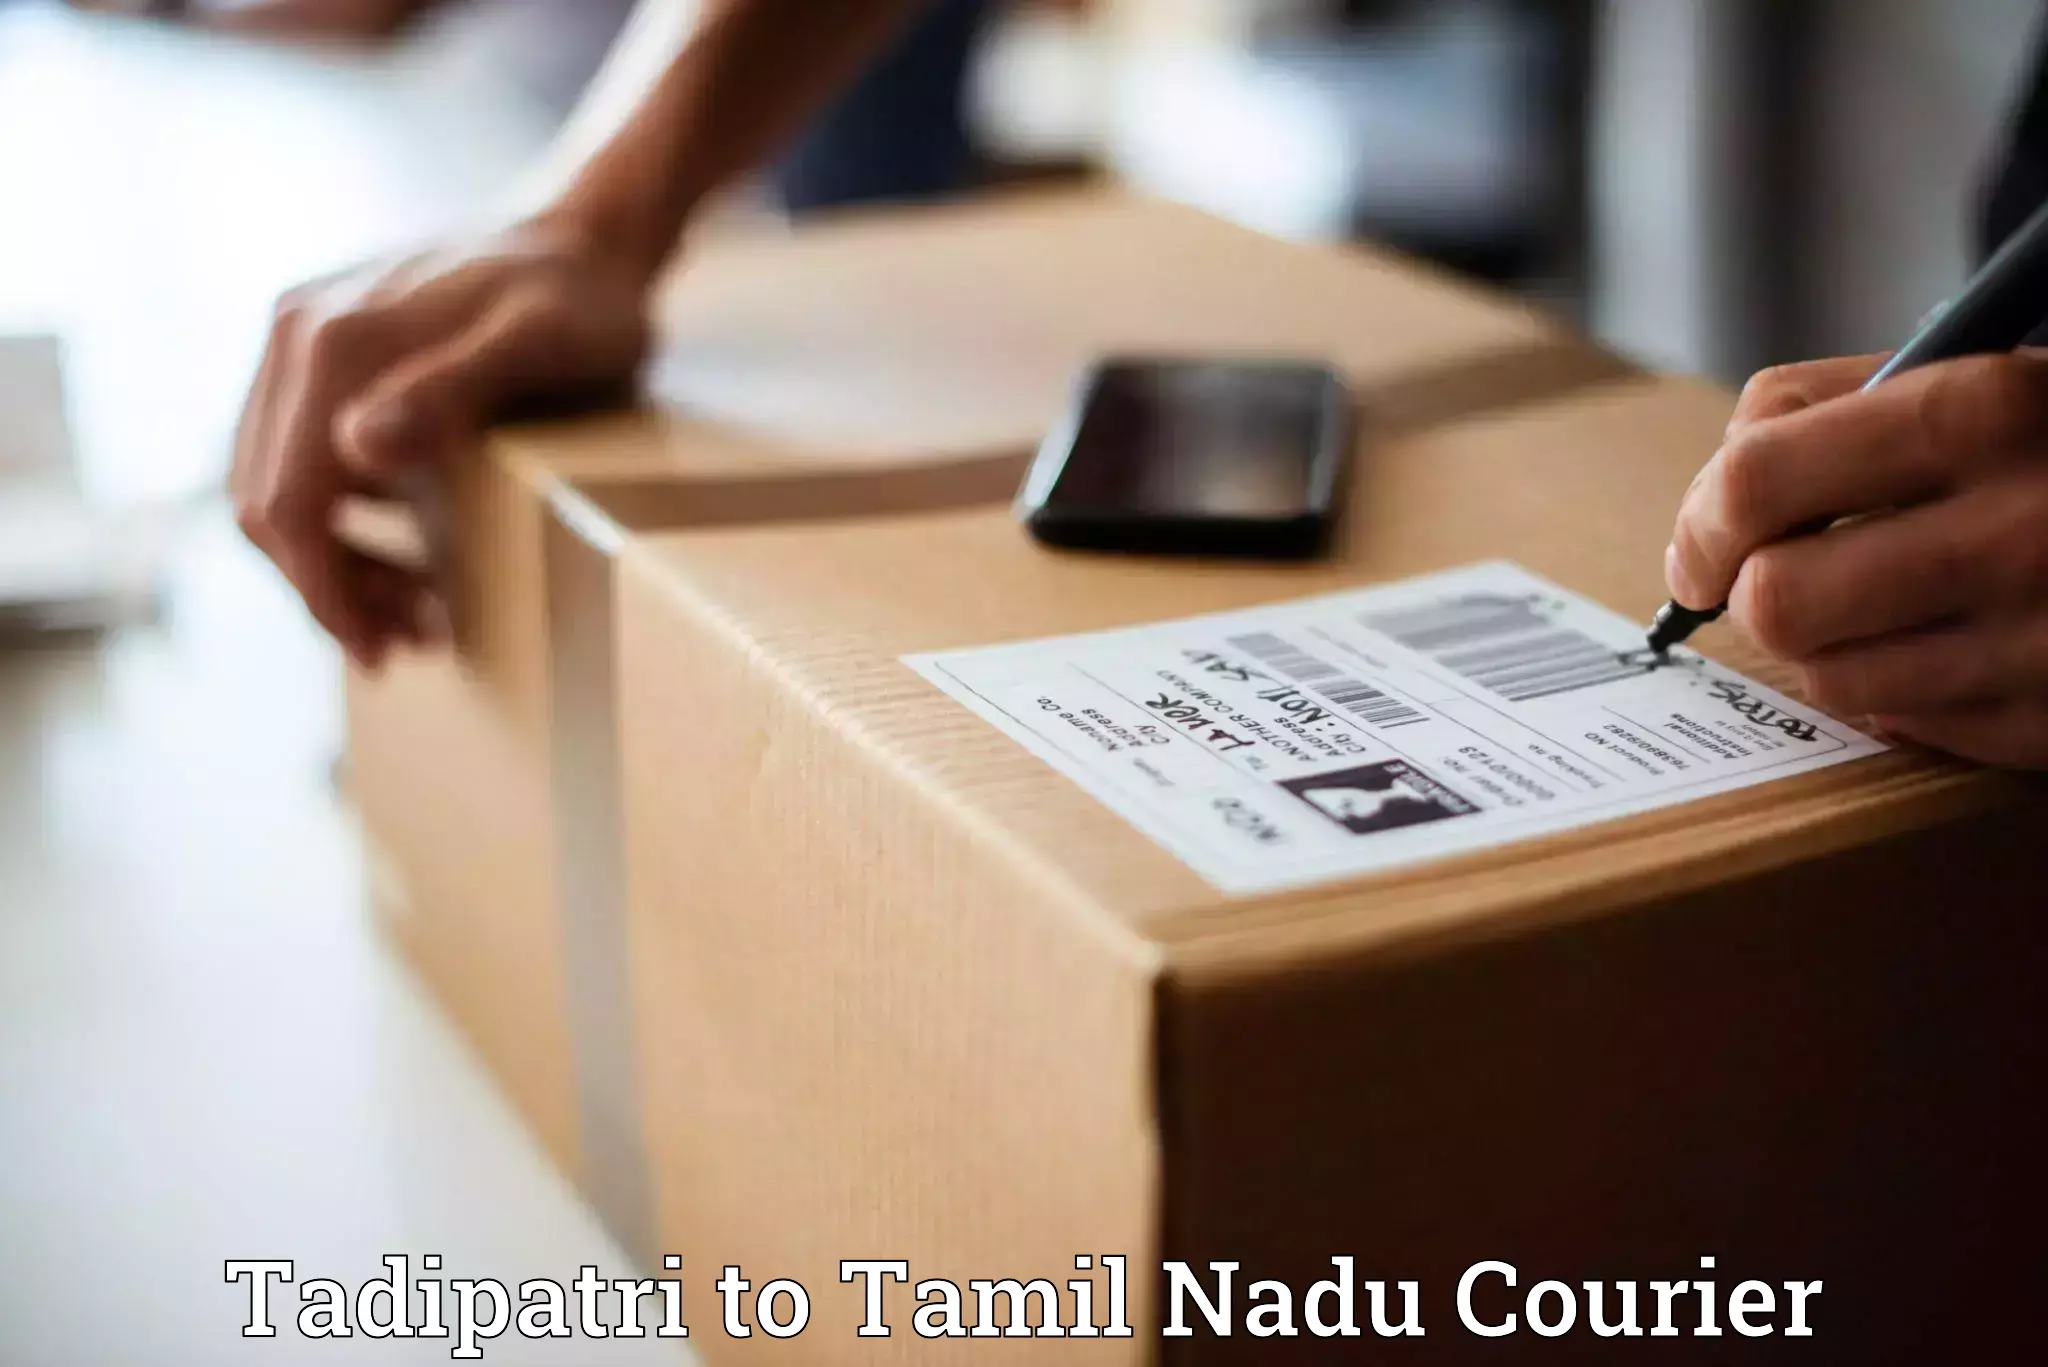 Urgent courier needs Tadipatri to Mayiladuthurai